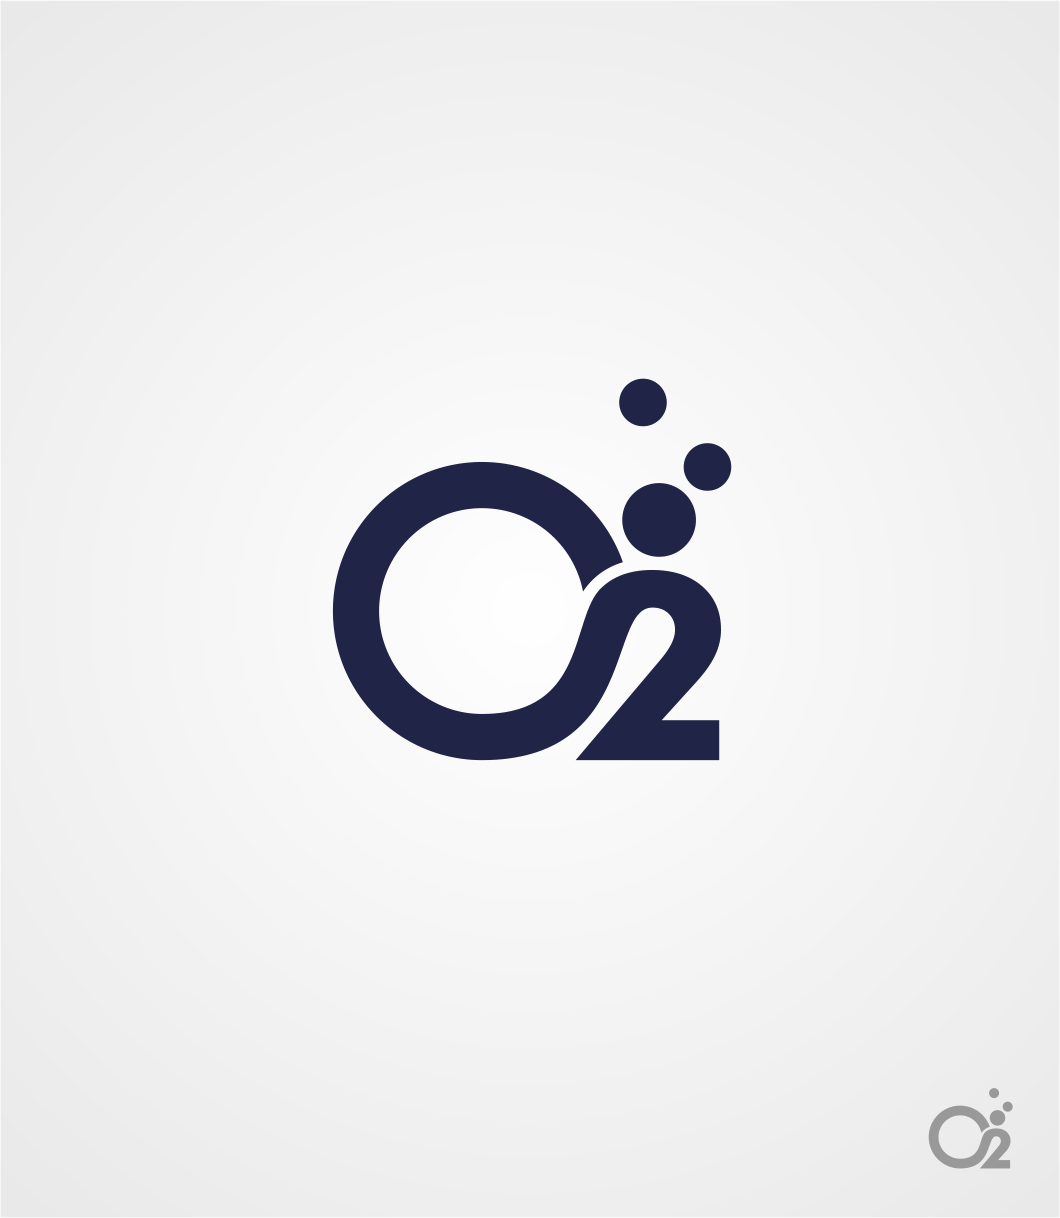 O2 Logo - Logo Design Contests » Artistic Logo Design for O2 » Design No. 28 ...